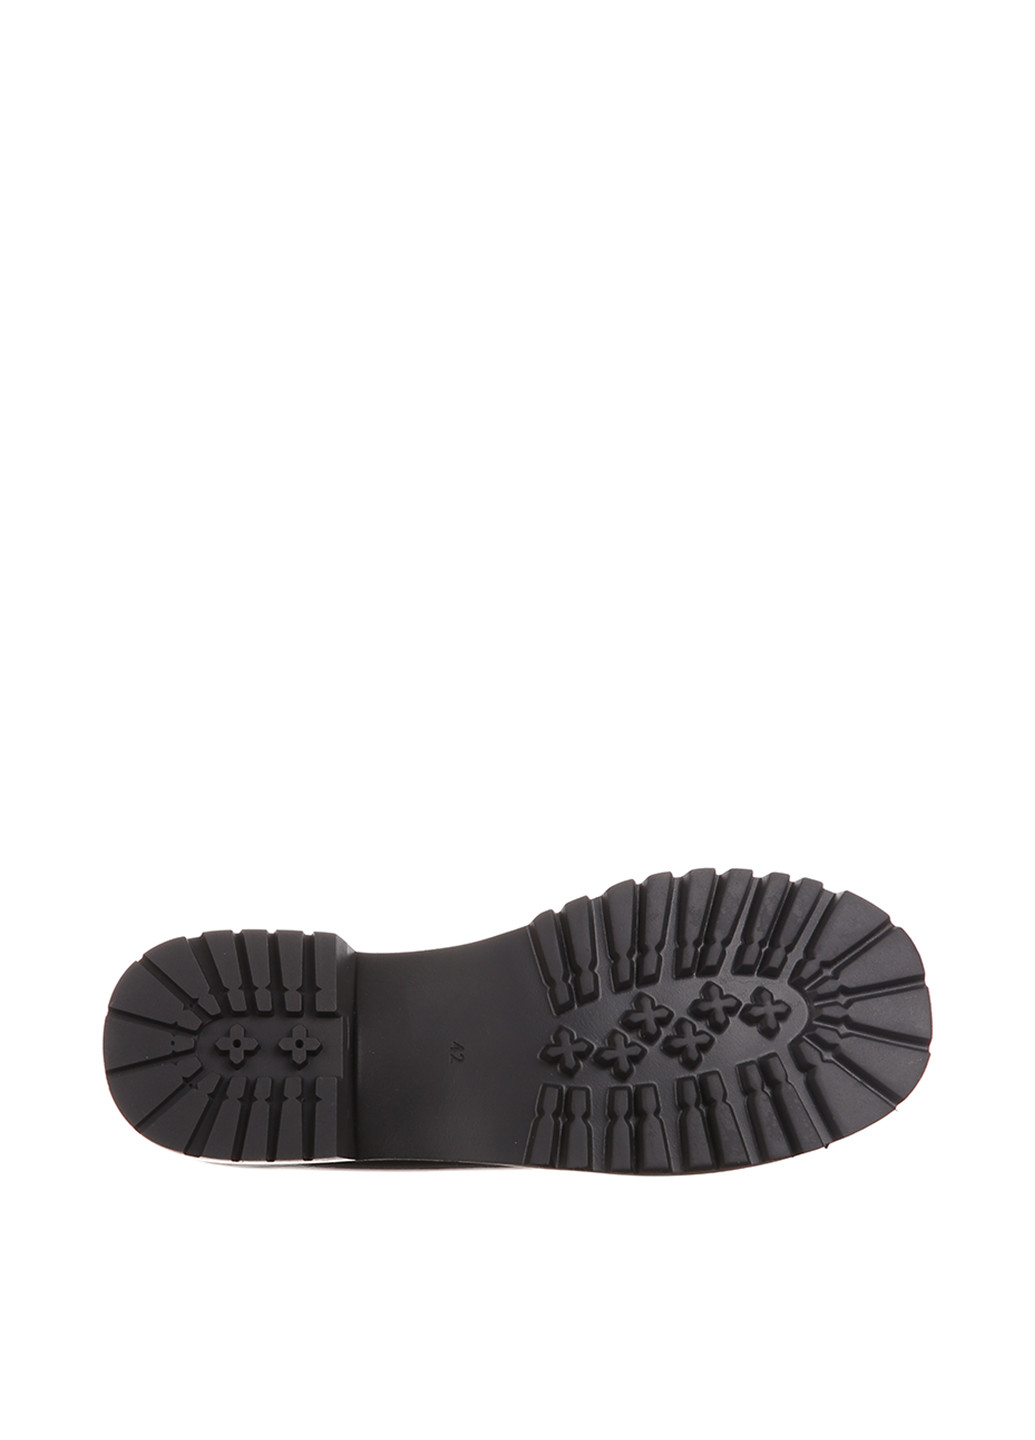 Туфли Blizzarini на низком каблуке лаковые, с аппликацией